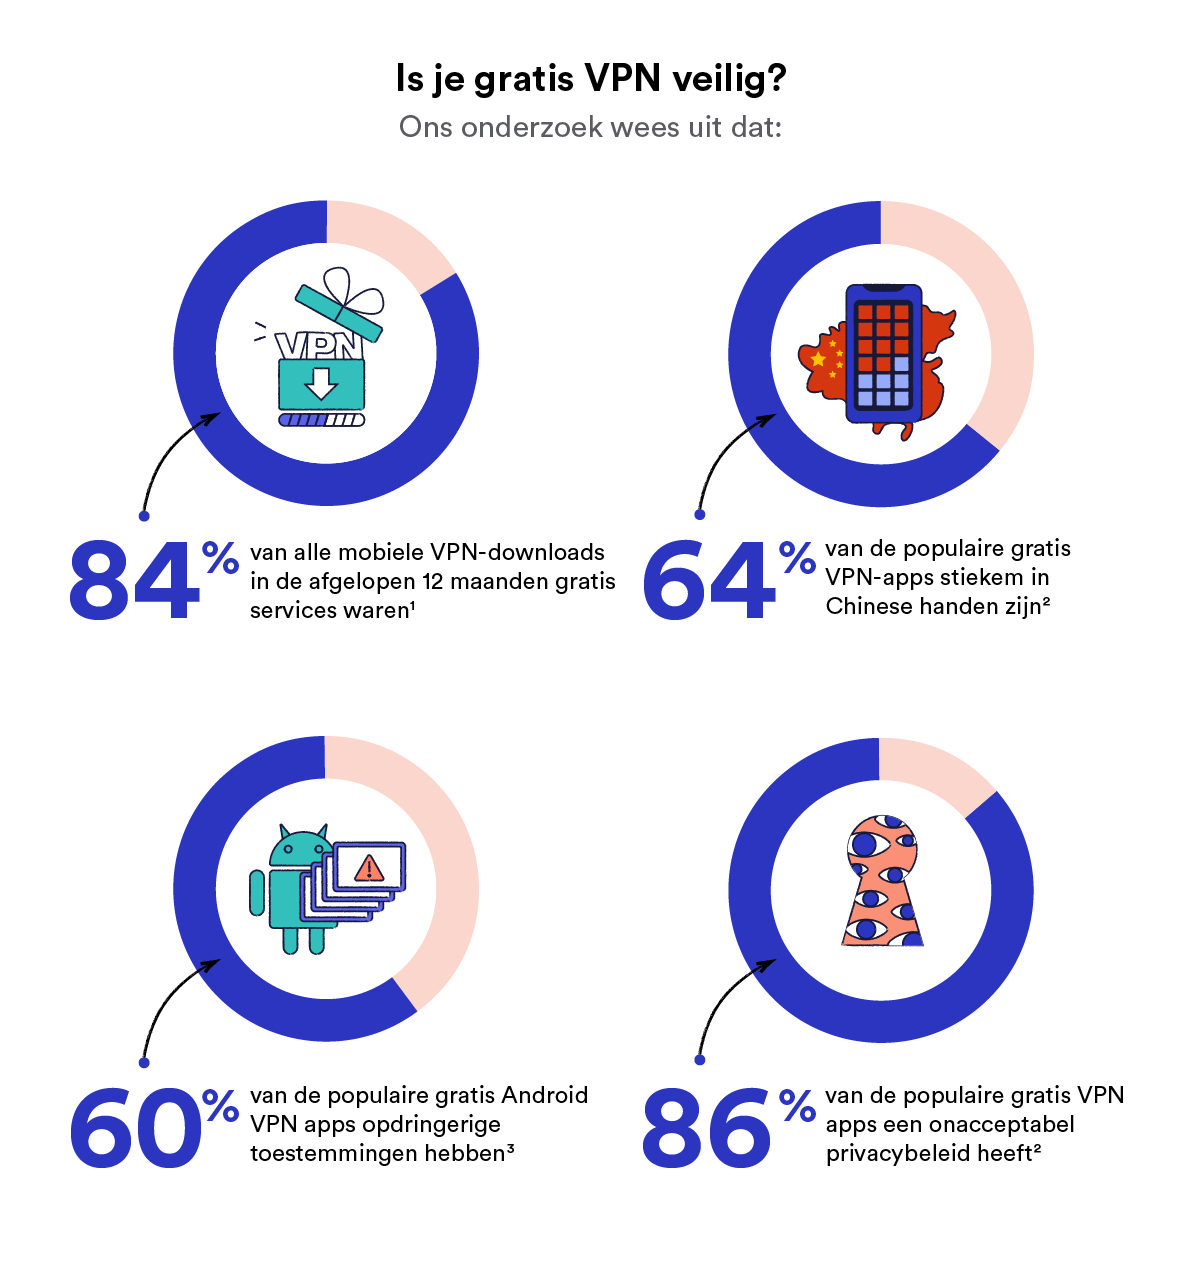 De risico's van een gratis VPN